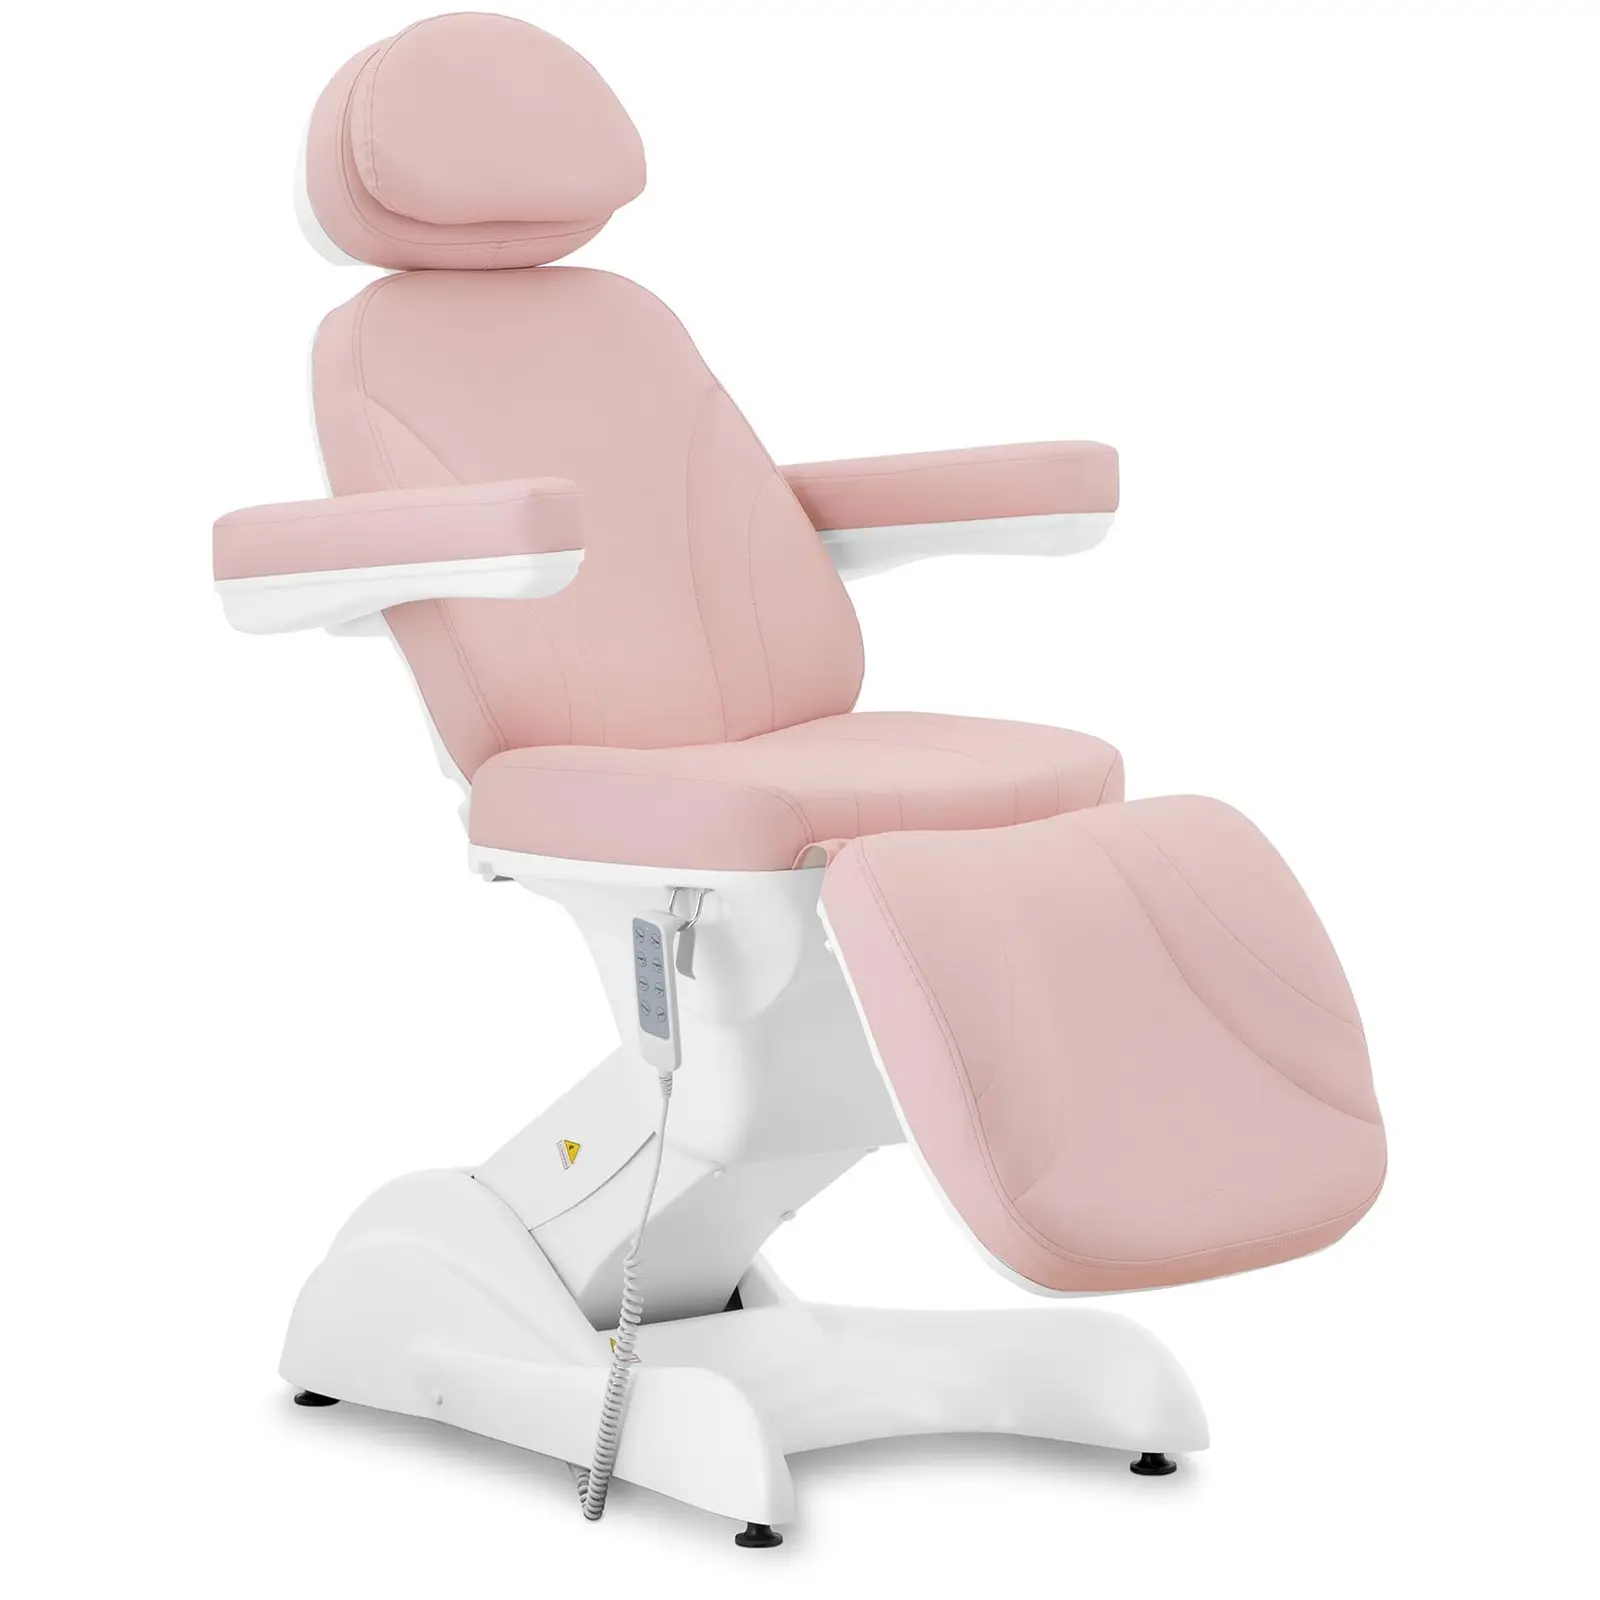 Cadeira de estética - 200 W - 150 kg - Rosa, Branco